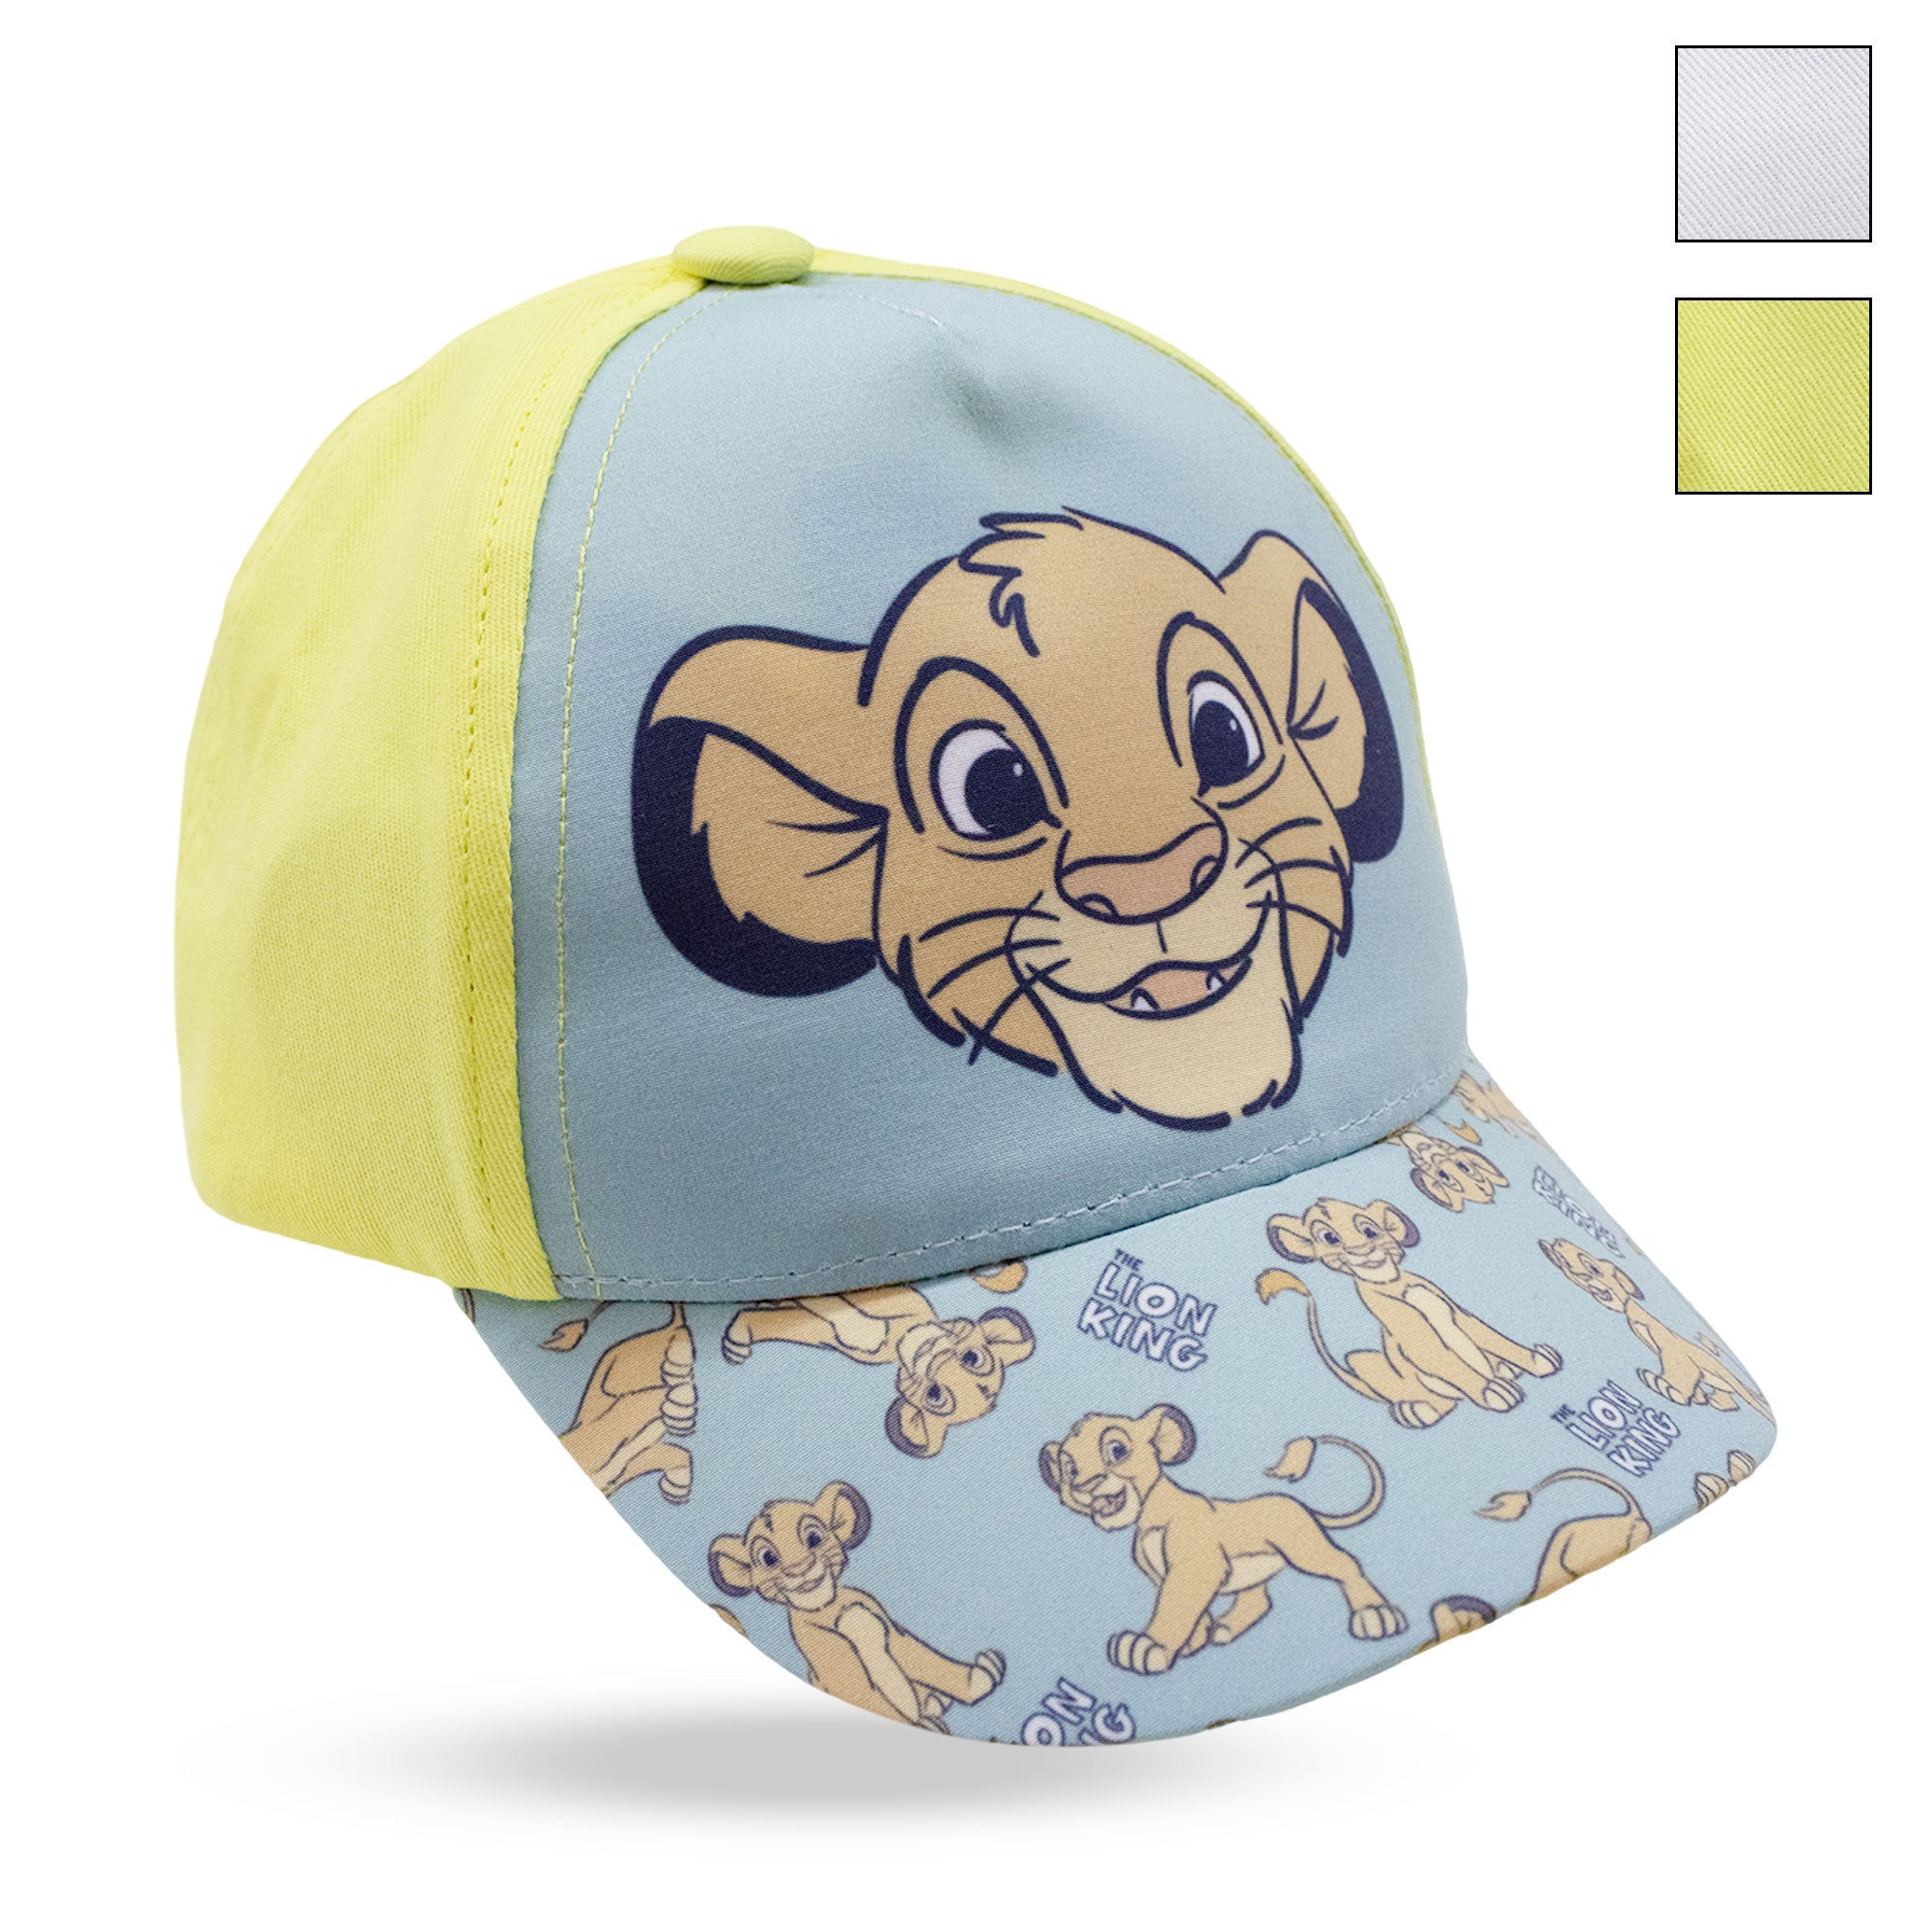 Disney The Lion King Simba visor cap for children 6739